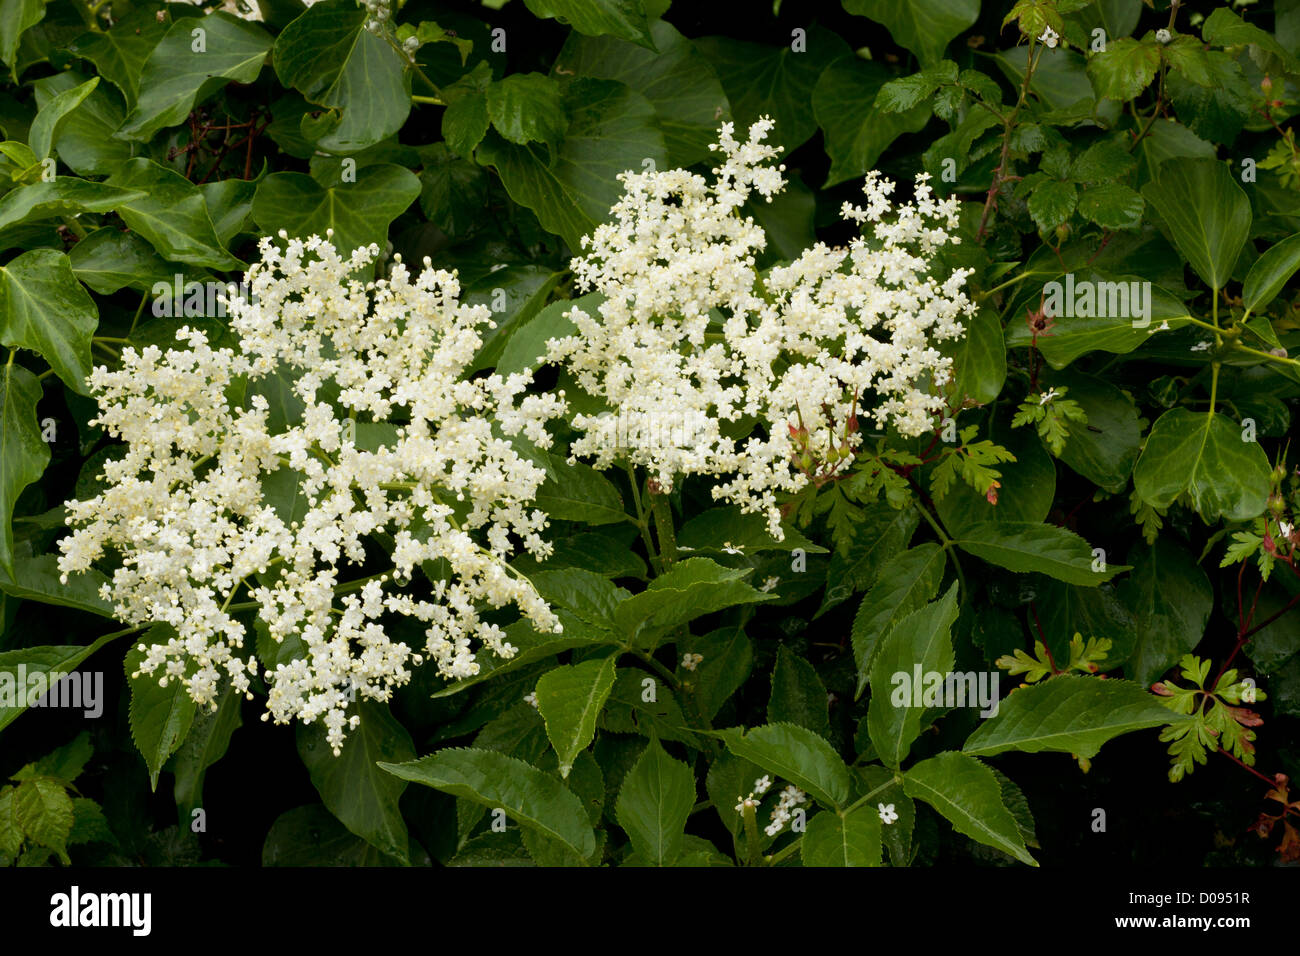 Comunes de saúco (Sambucus nigra) en flor, en verano Foto de stock